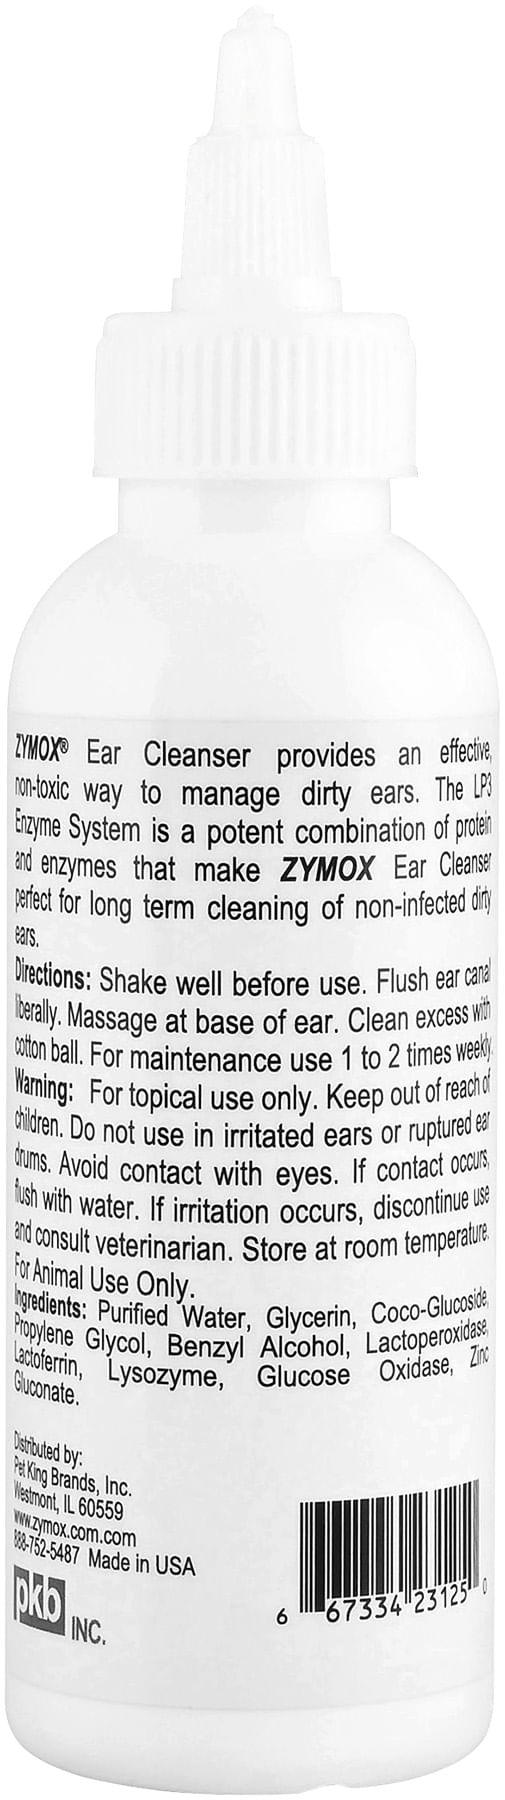 ZYMOX-Ear-Cleanser-4-oz-bottle